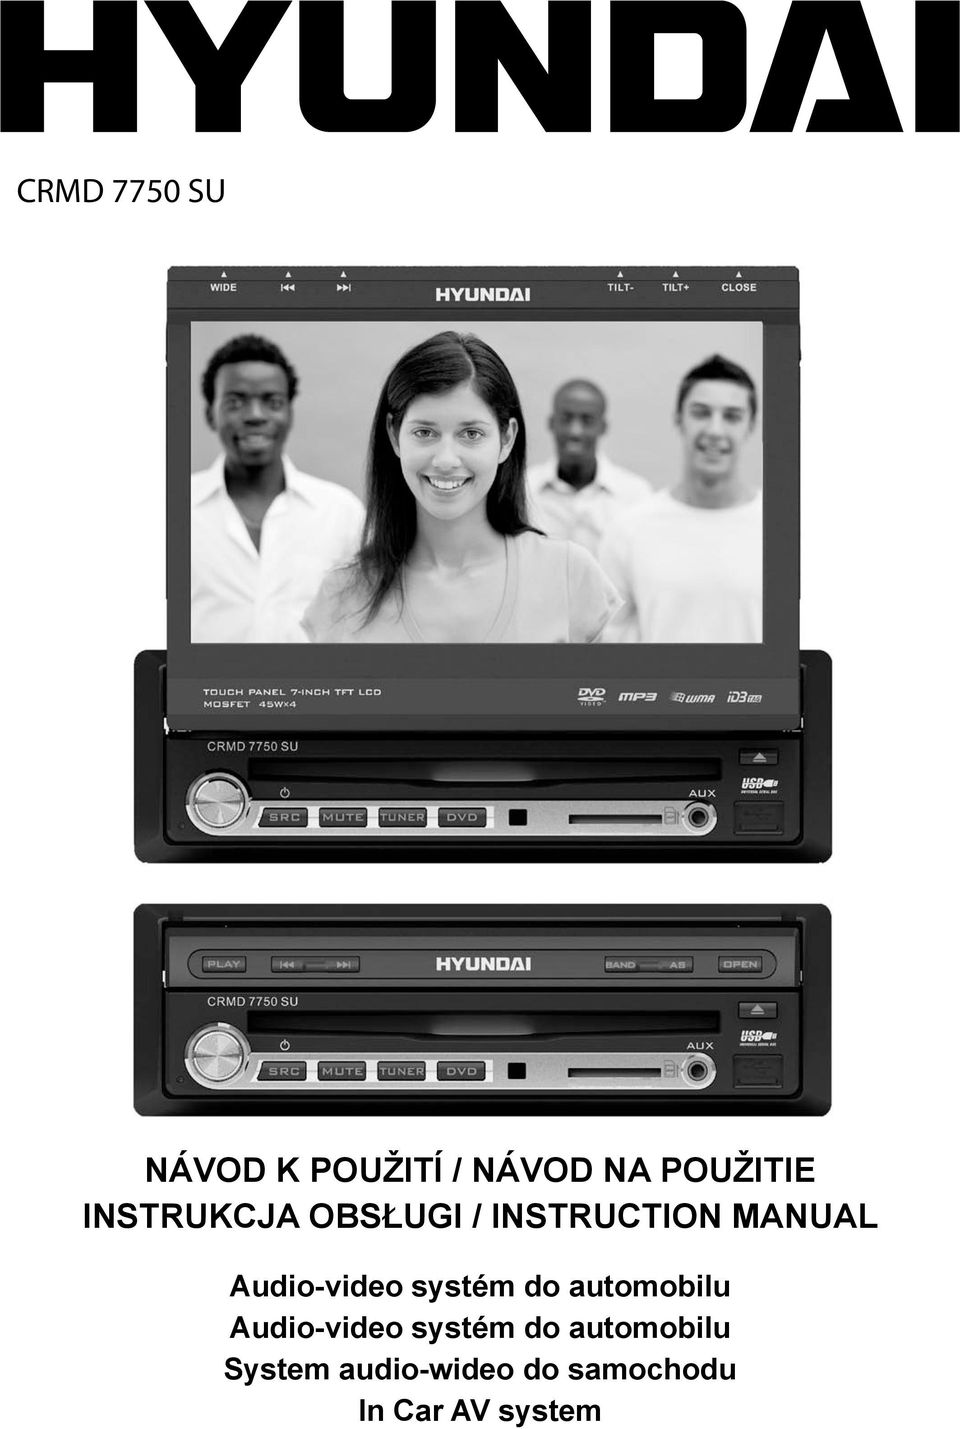 Audio-video systém do automobilu Audio-video